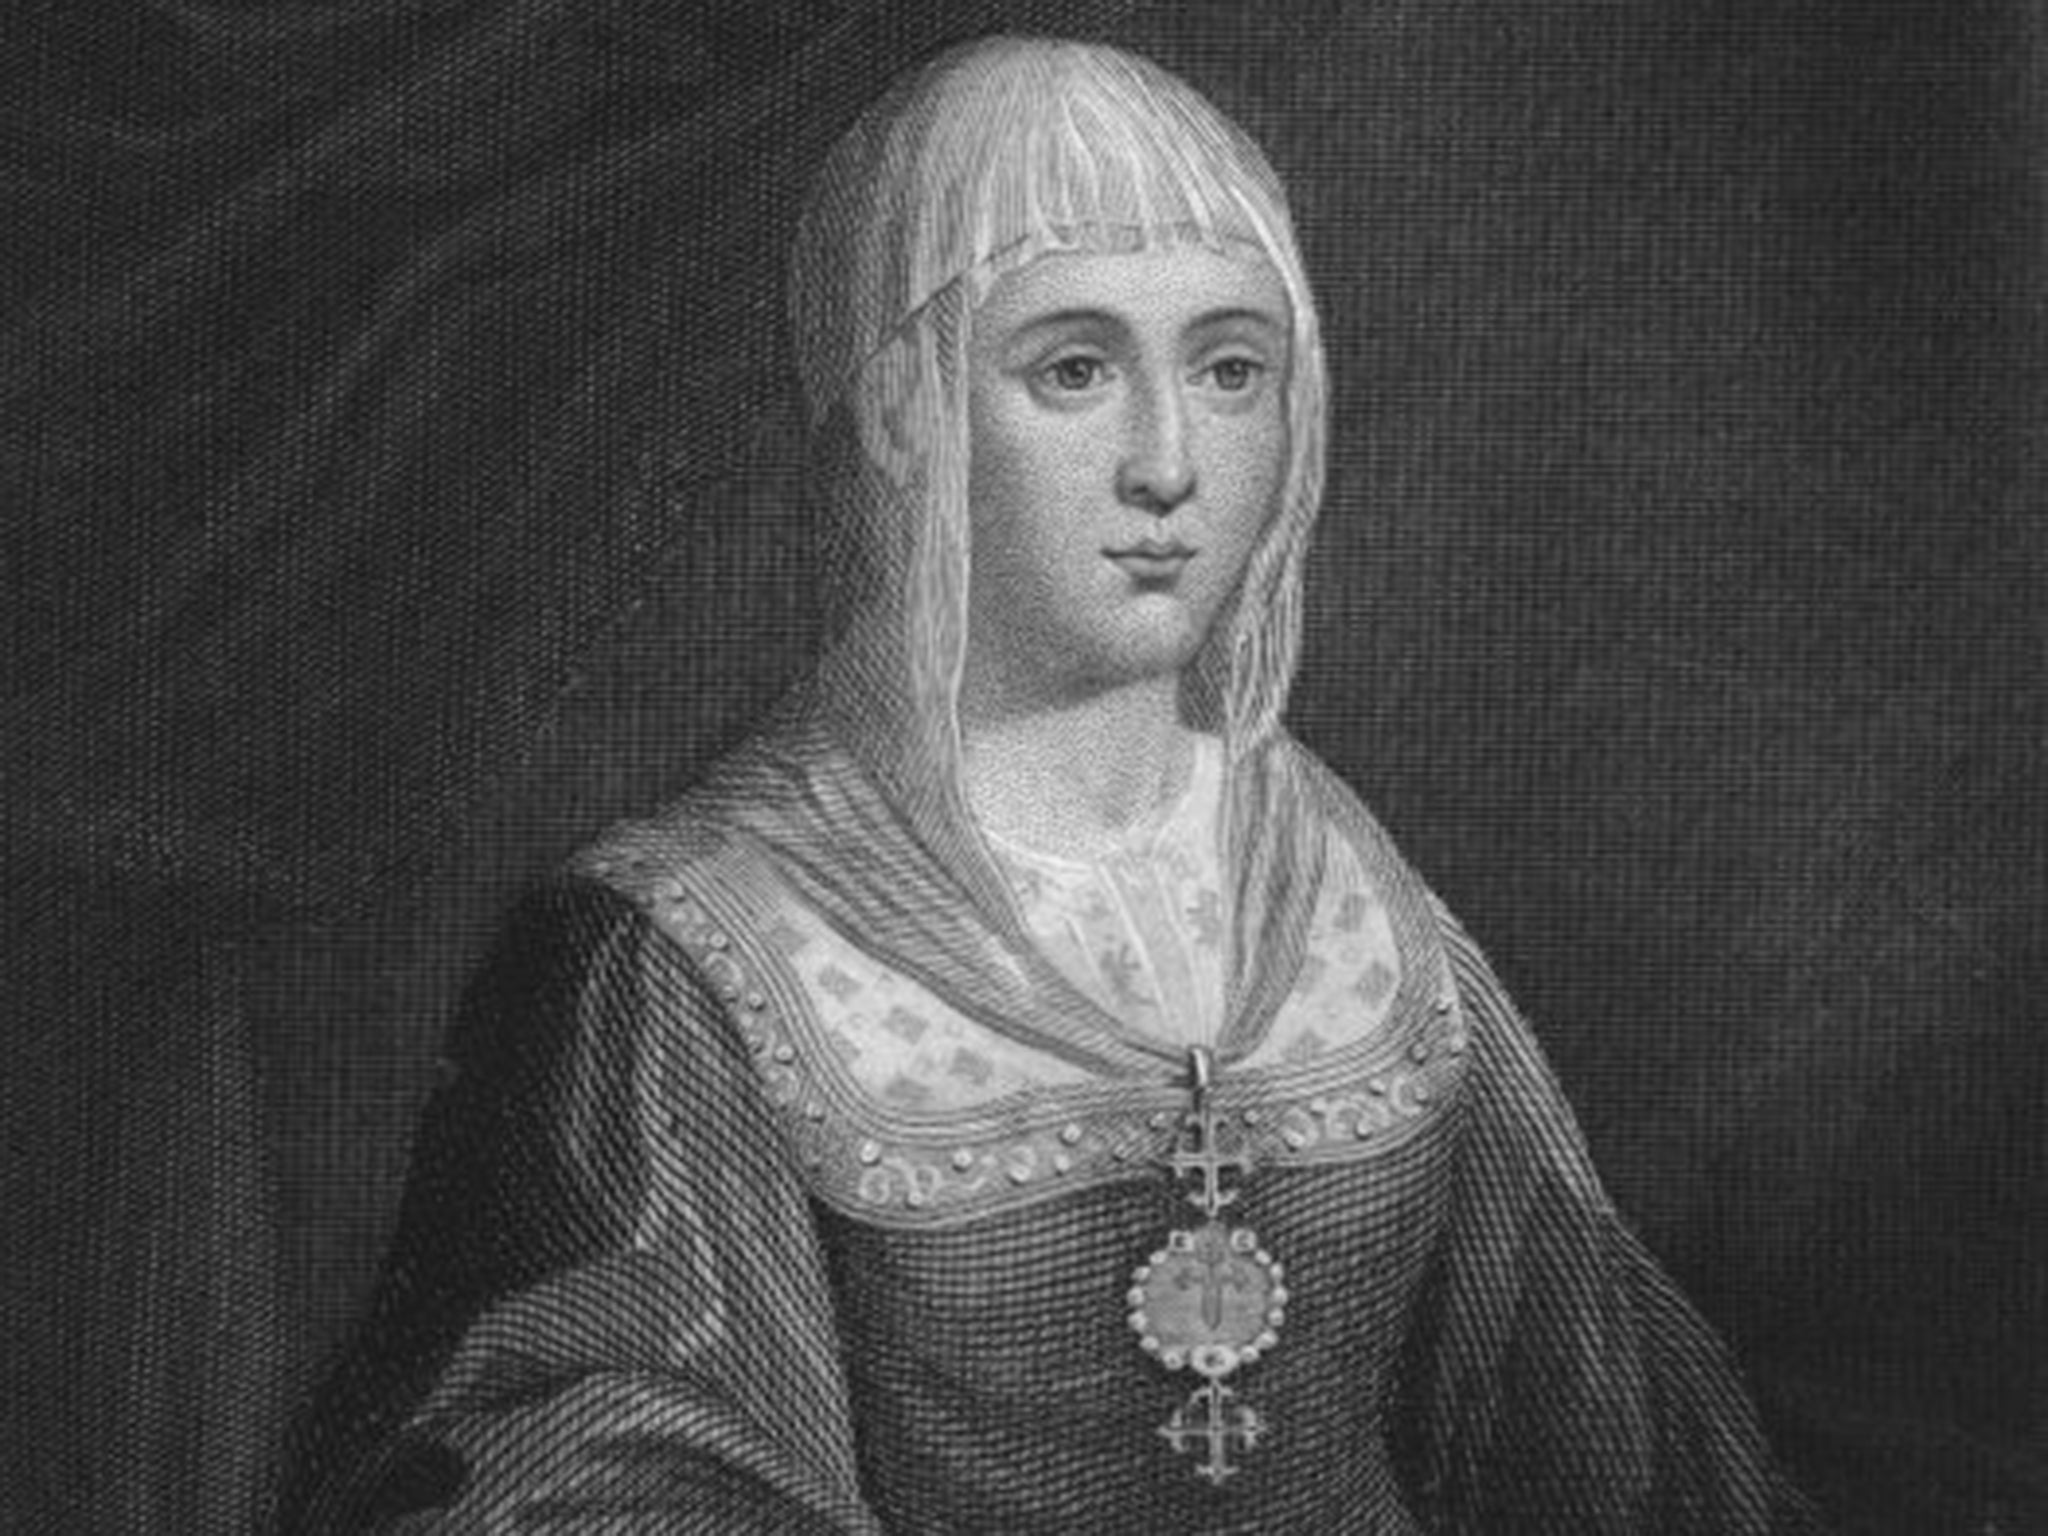 Queen Isabella of Spain (1451 - 1504)